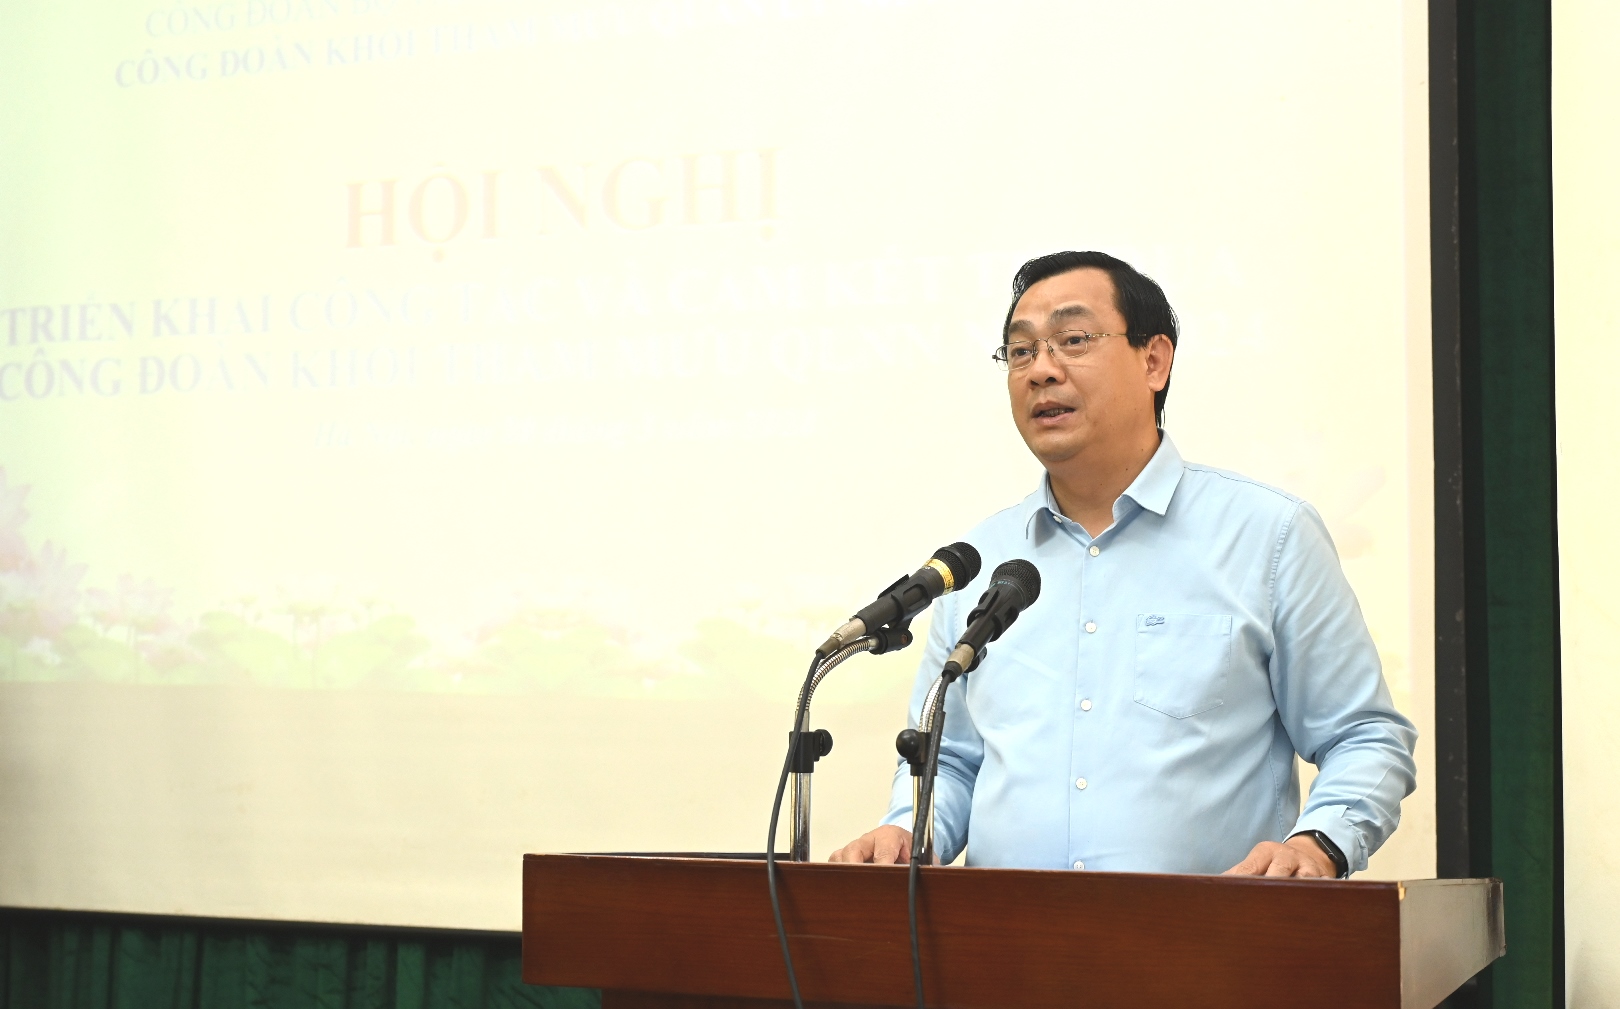 Cục trưởng Cục Du lịch Quốc gia Việt Nam Nguyễn Trùng Khánh phát biểu tại hội nghị